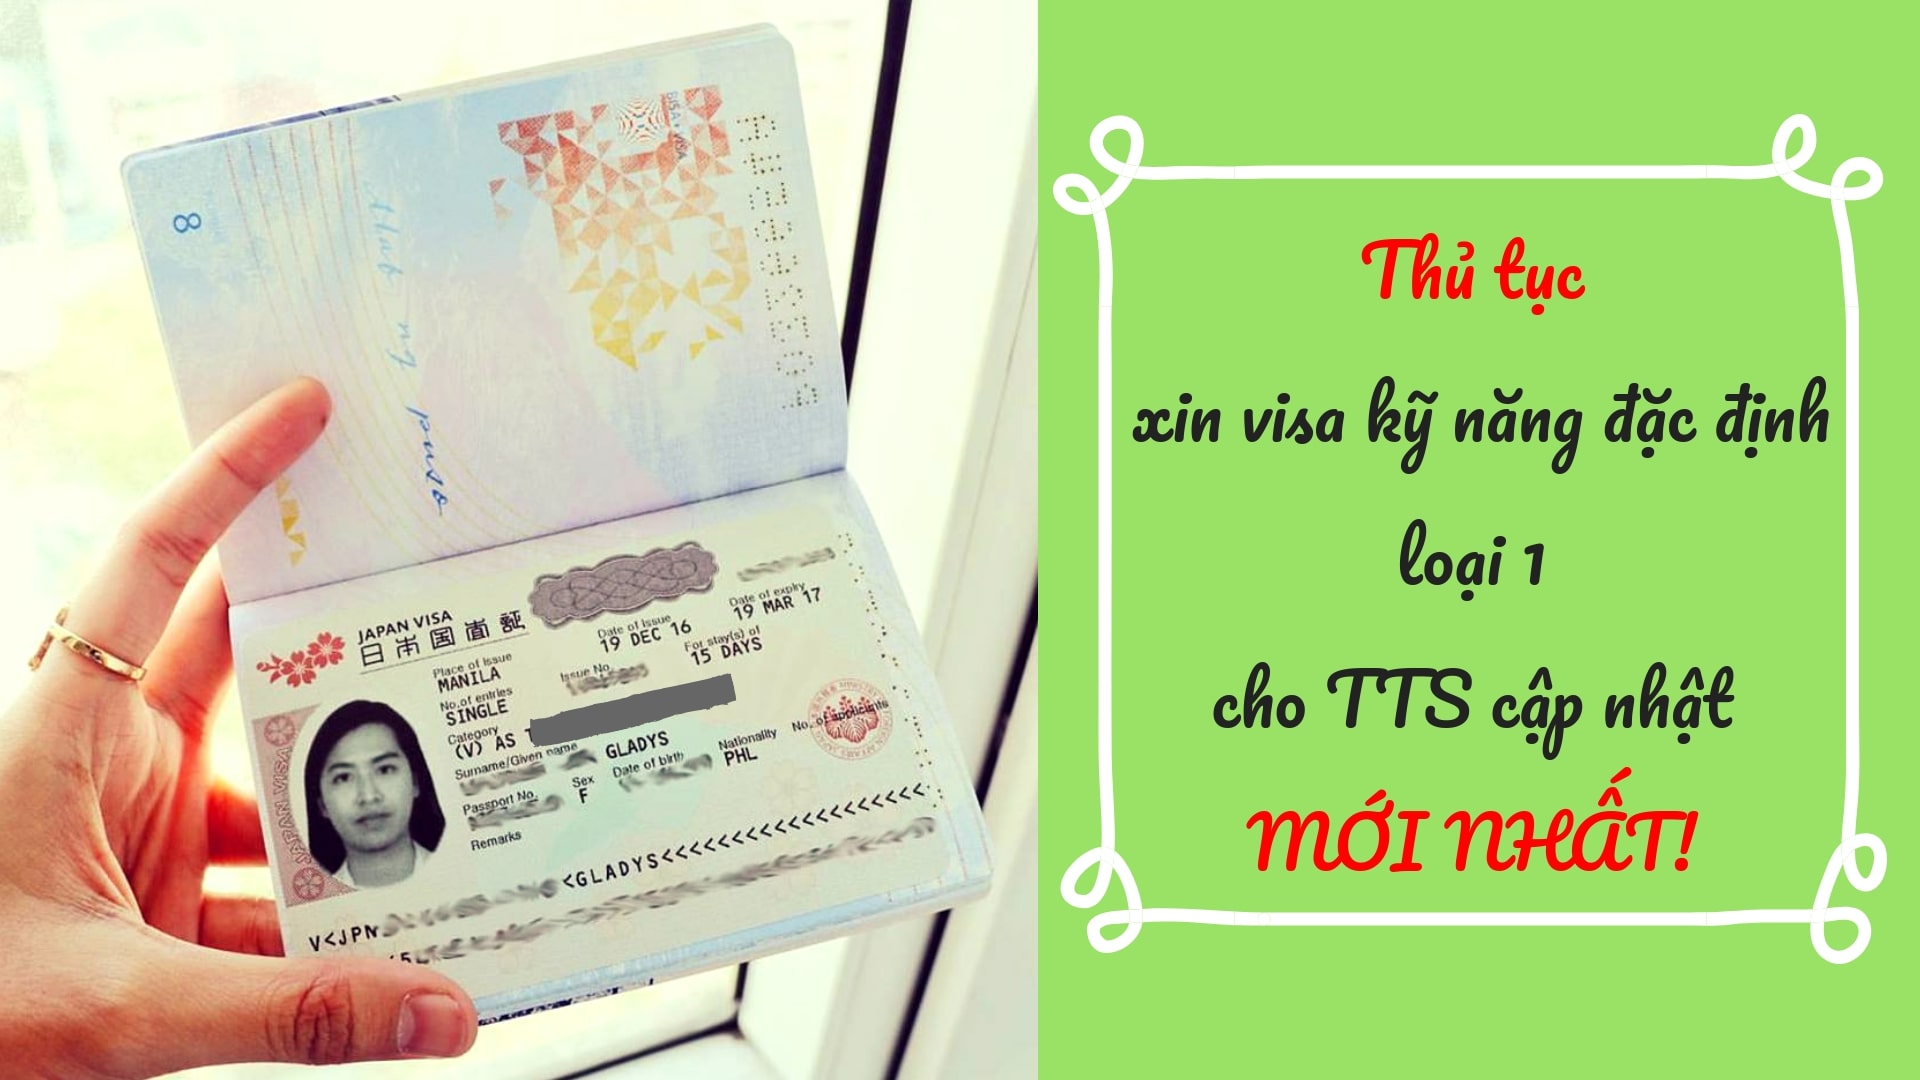 Thủ tục xin visa kỹ năng đặc định loại 1 cho TTS cập nhật MỚI NHẤT!